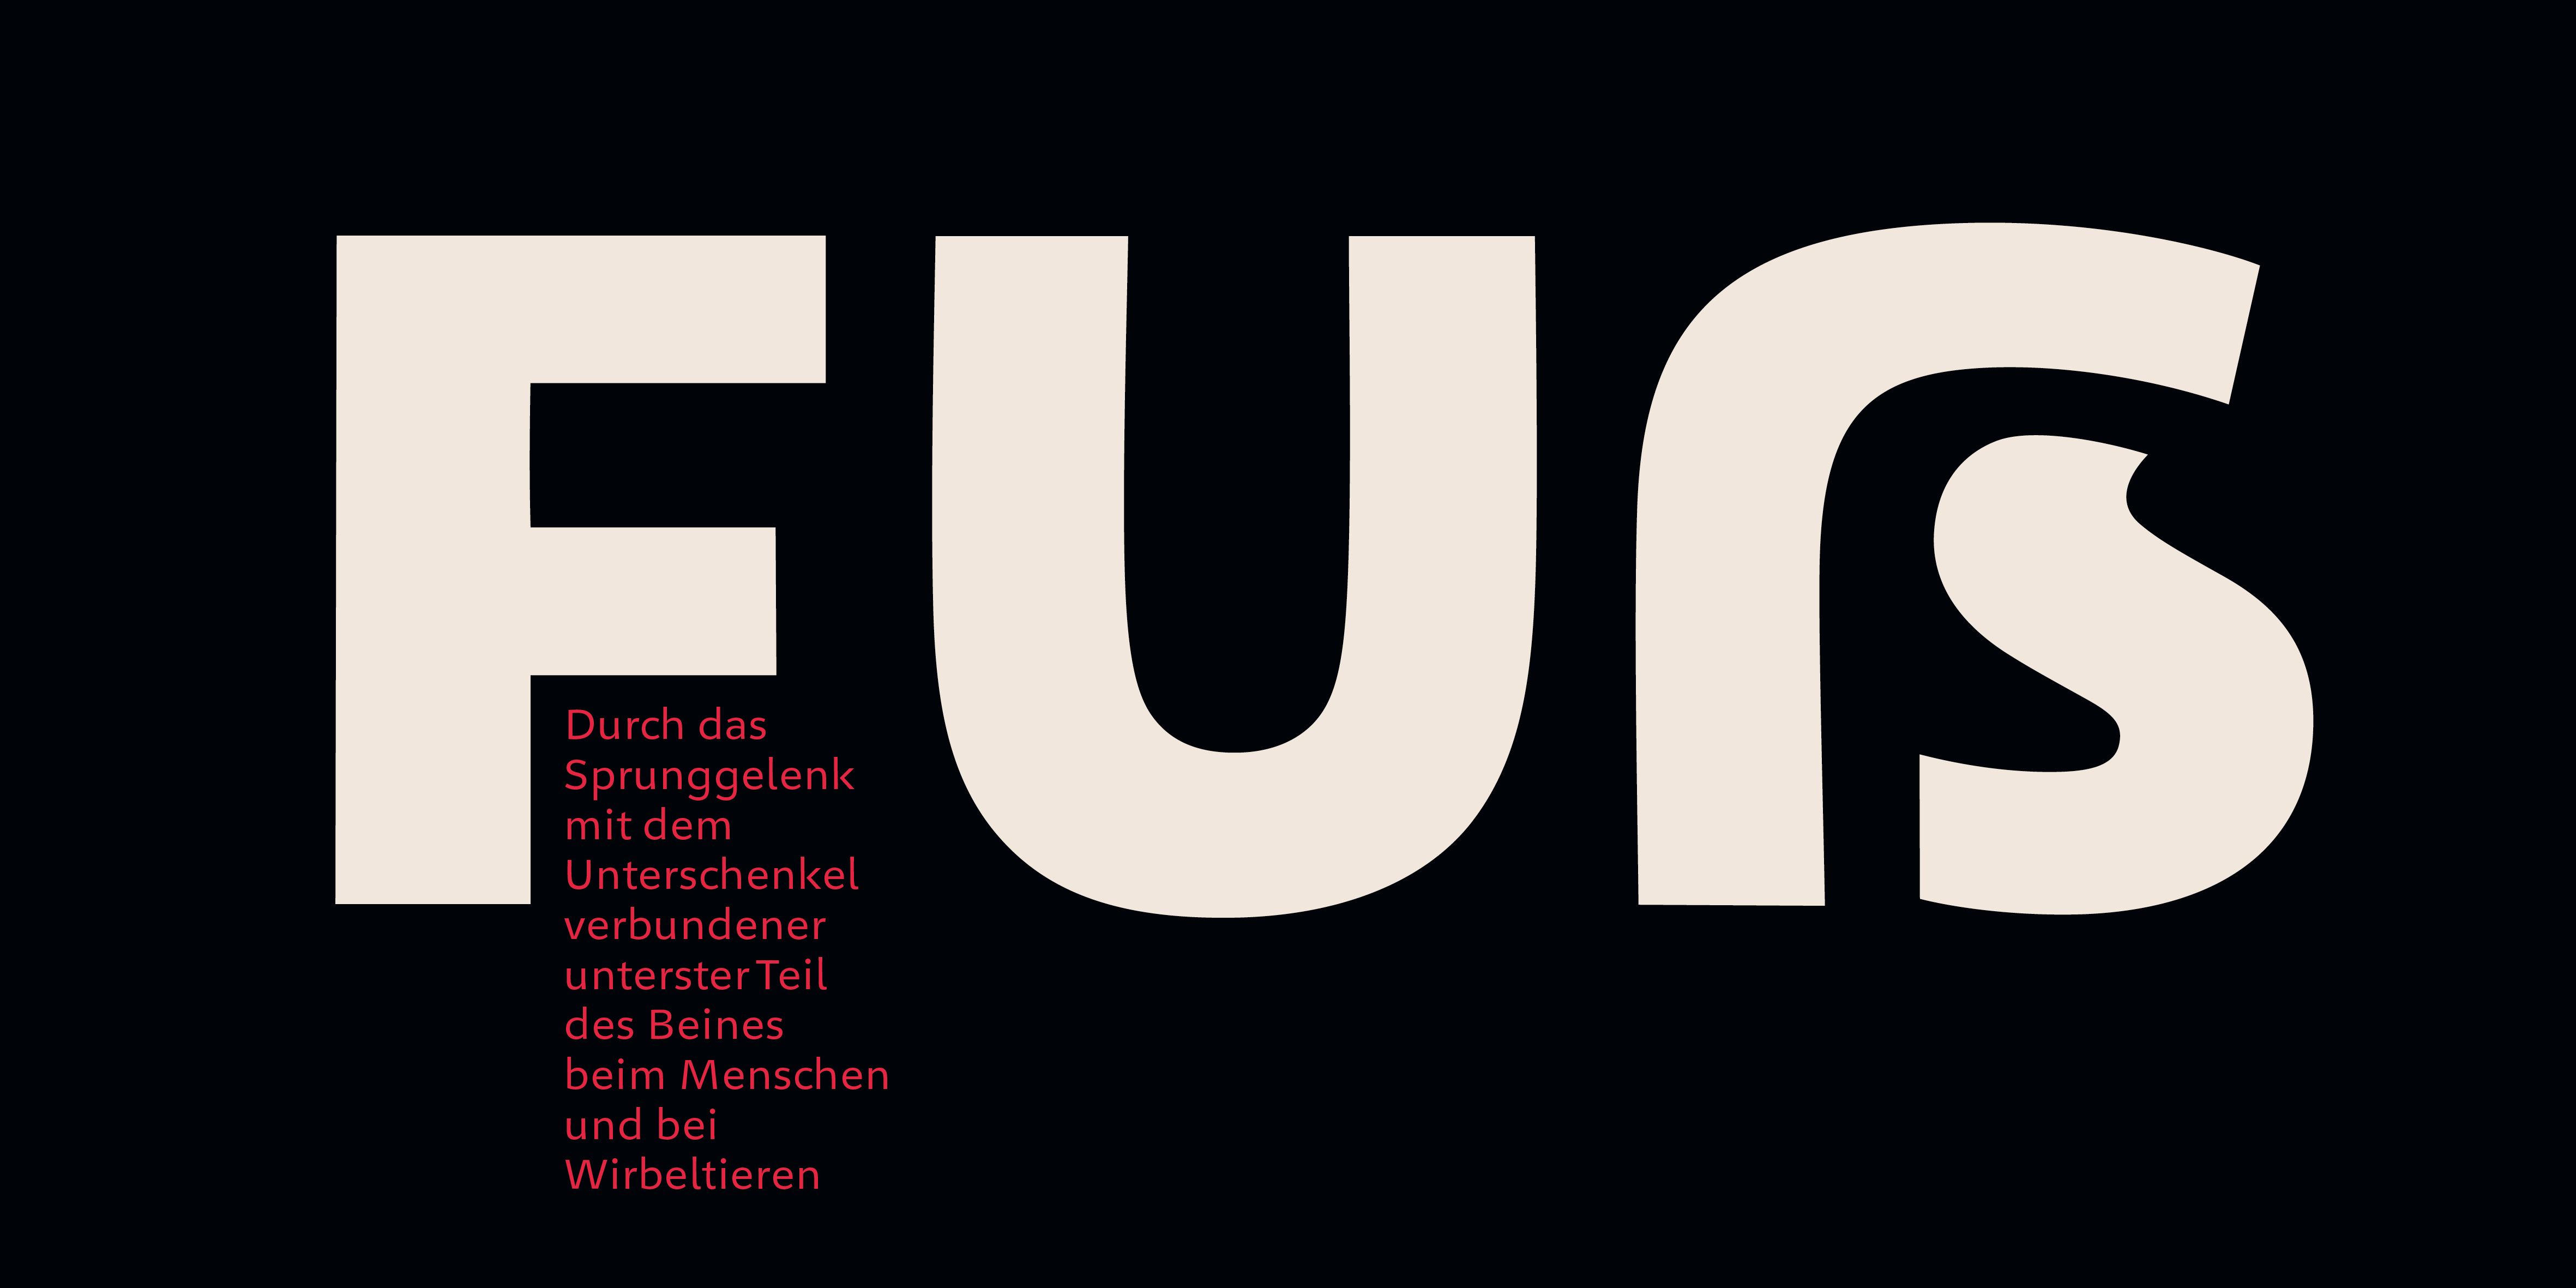 Poster: Typografische Umsetzung zeigt das Versal-Scharf-S